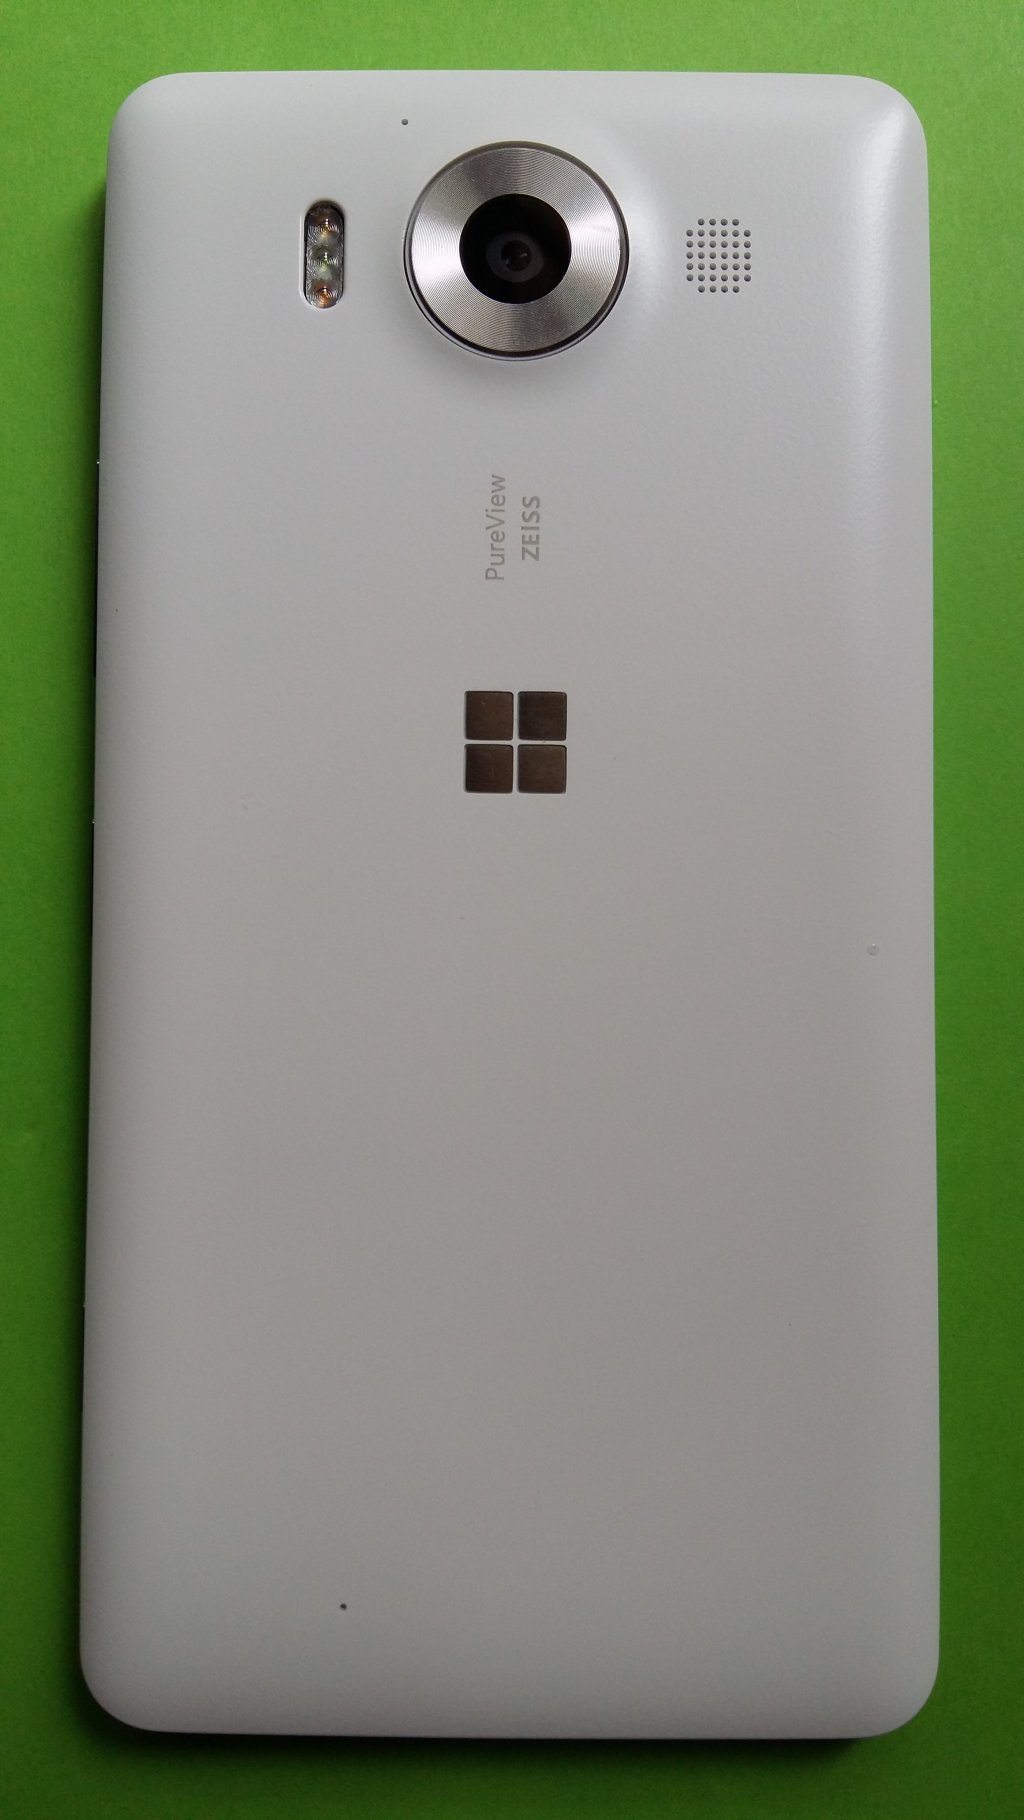 image-9792302-Microsoft_950_Lumia_(1)2-e4da3.w640.jpg